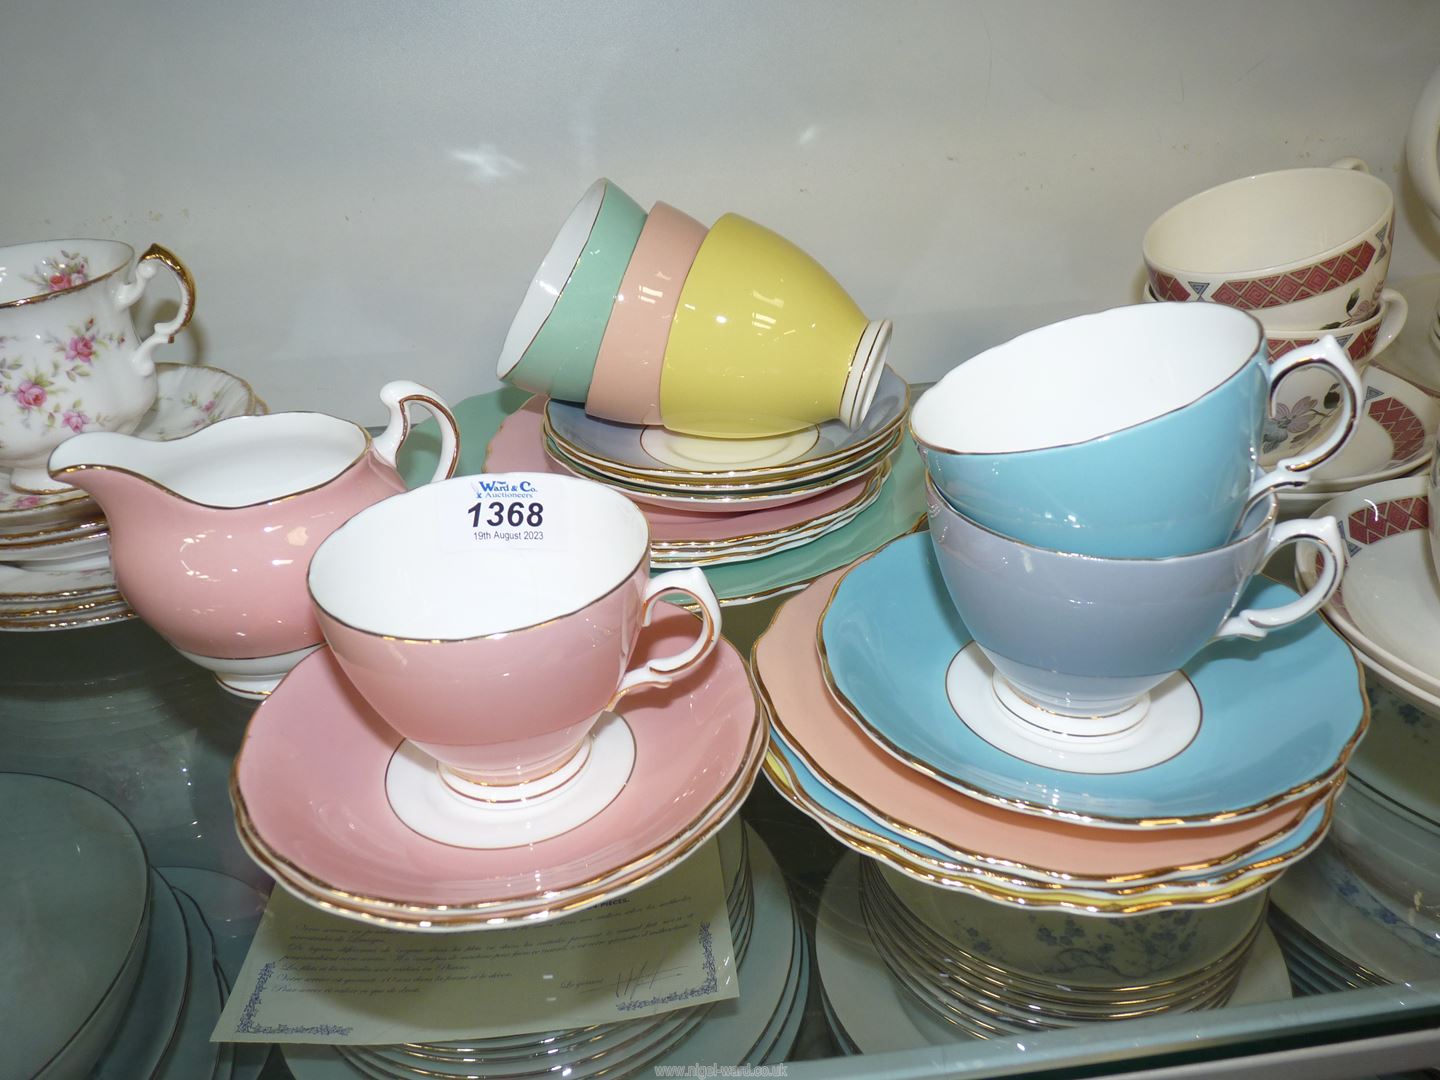 A part Colclough, Harlequin bone china tea set including six cups and saucers, six tea plates,